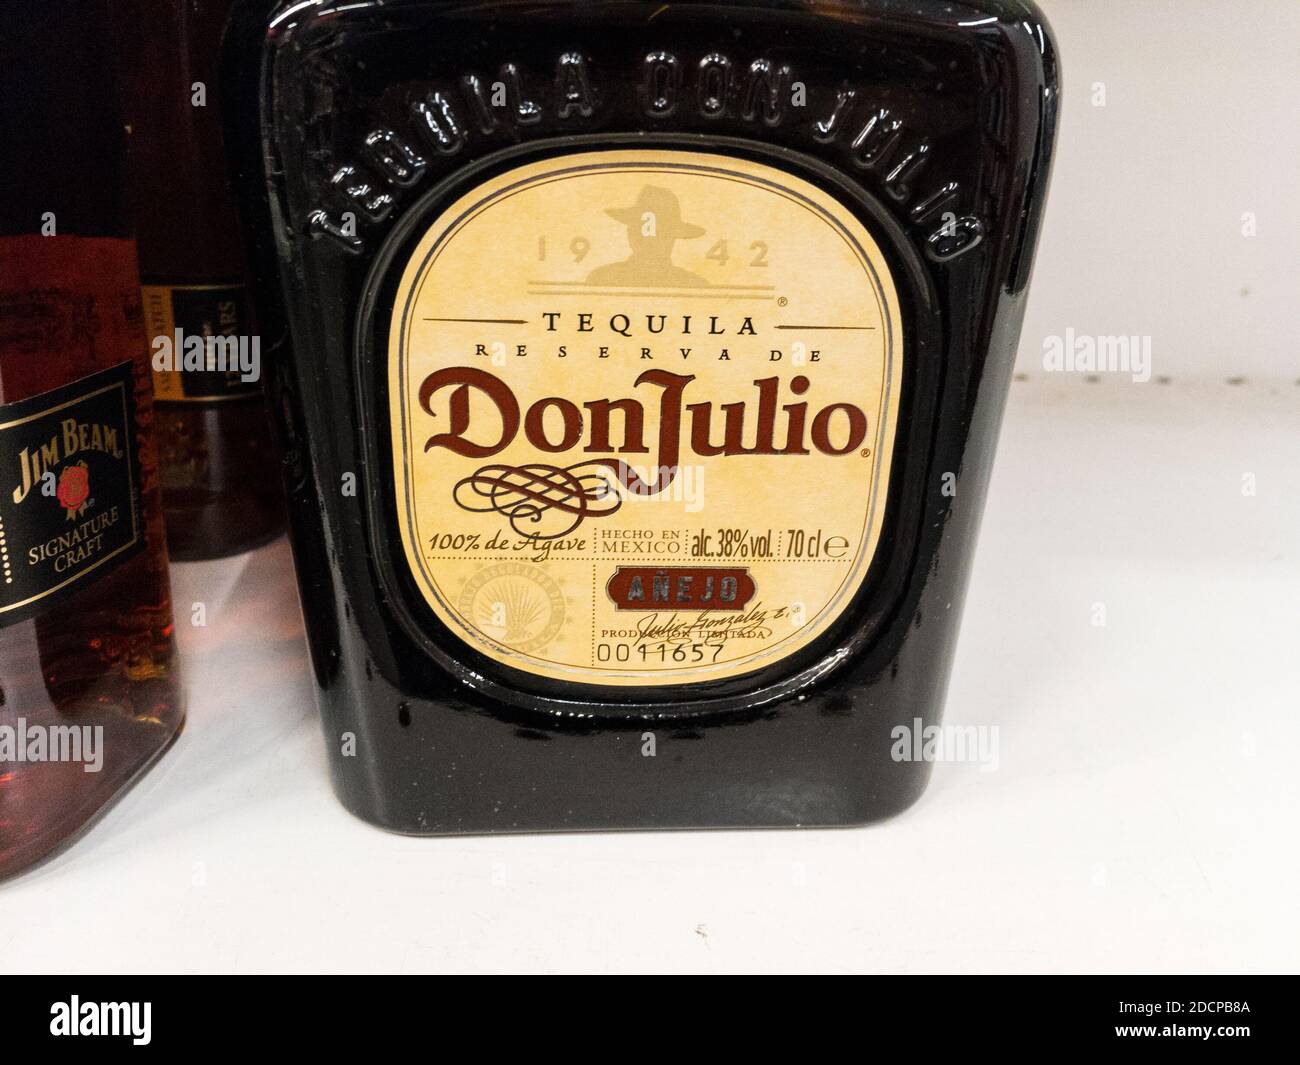 BELGRAD, SERBIEN - 1. NOVEMBER 2020: Tequila Don Julio Logo auf einer ihrer Flaschen. Don Julio ist eine mexikanische Marke von Tequila und anderen mexikanischen Alkoholen Stockfoto